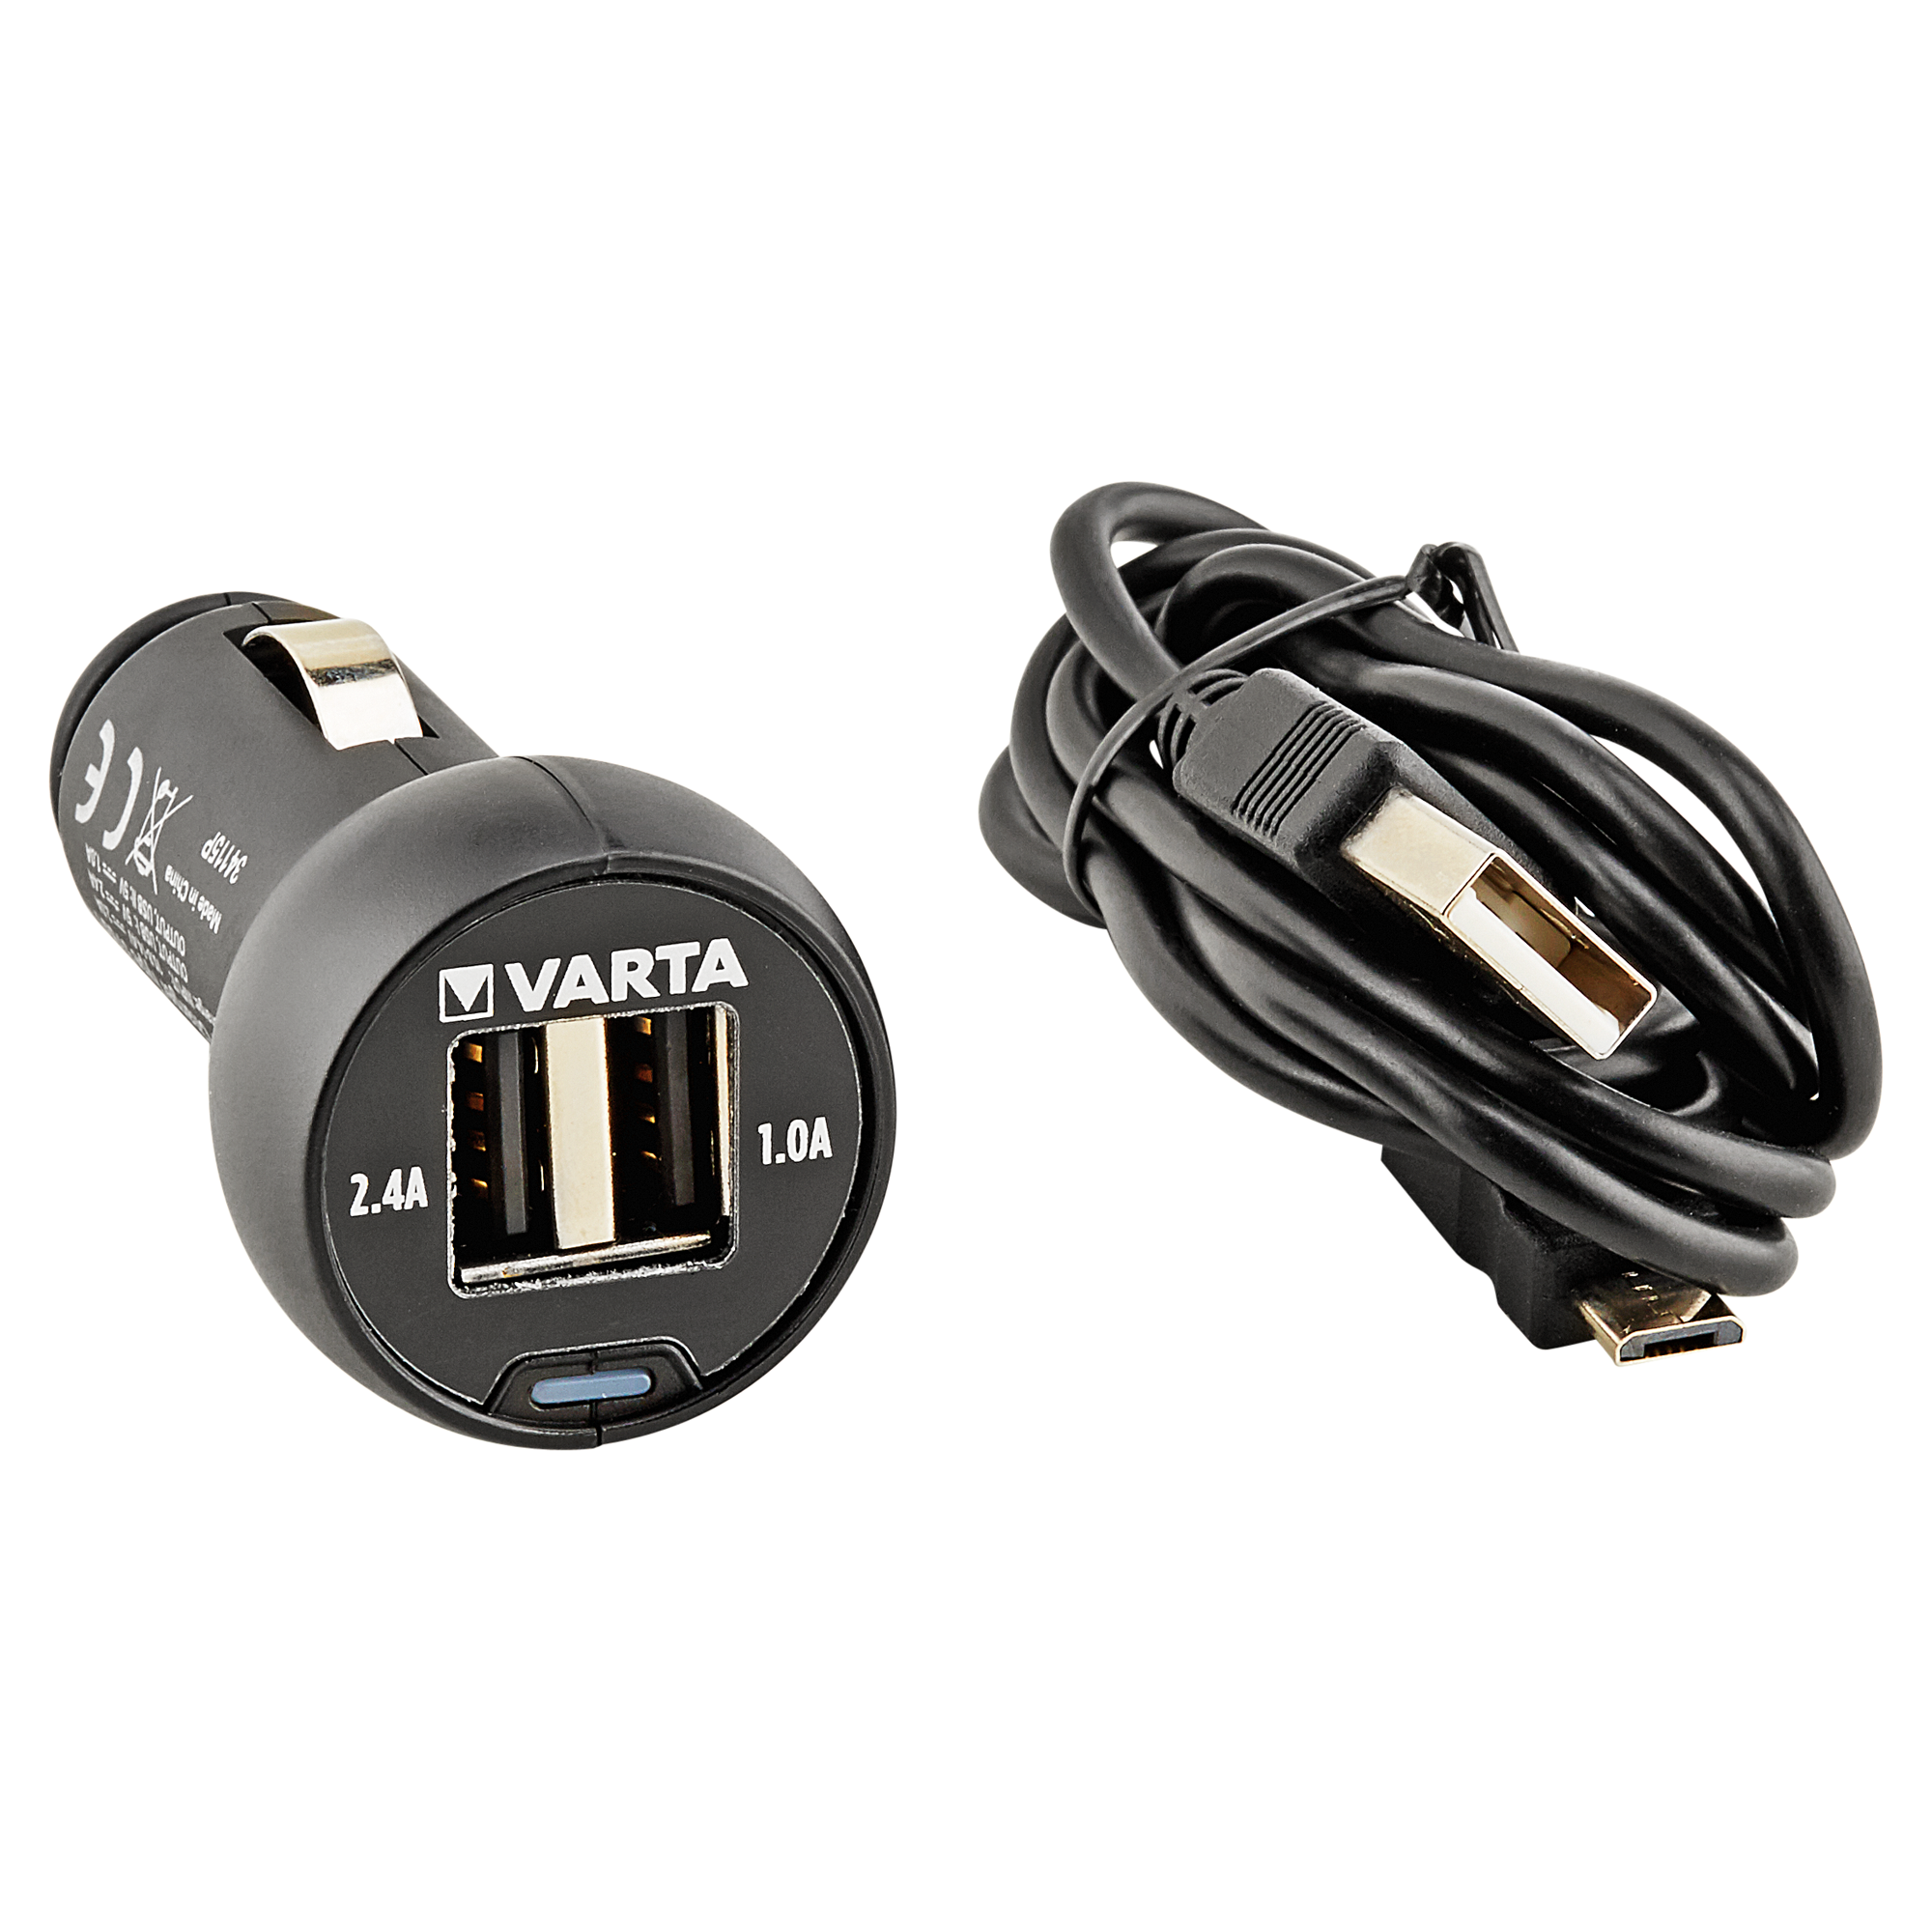 USB-Schnelladapter für das KFZ + product picture